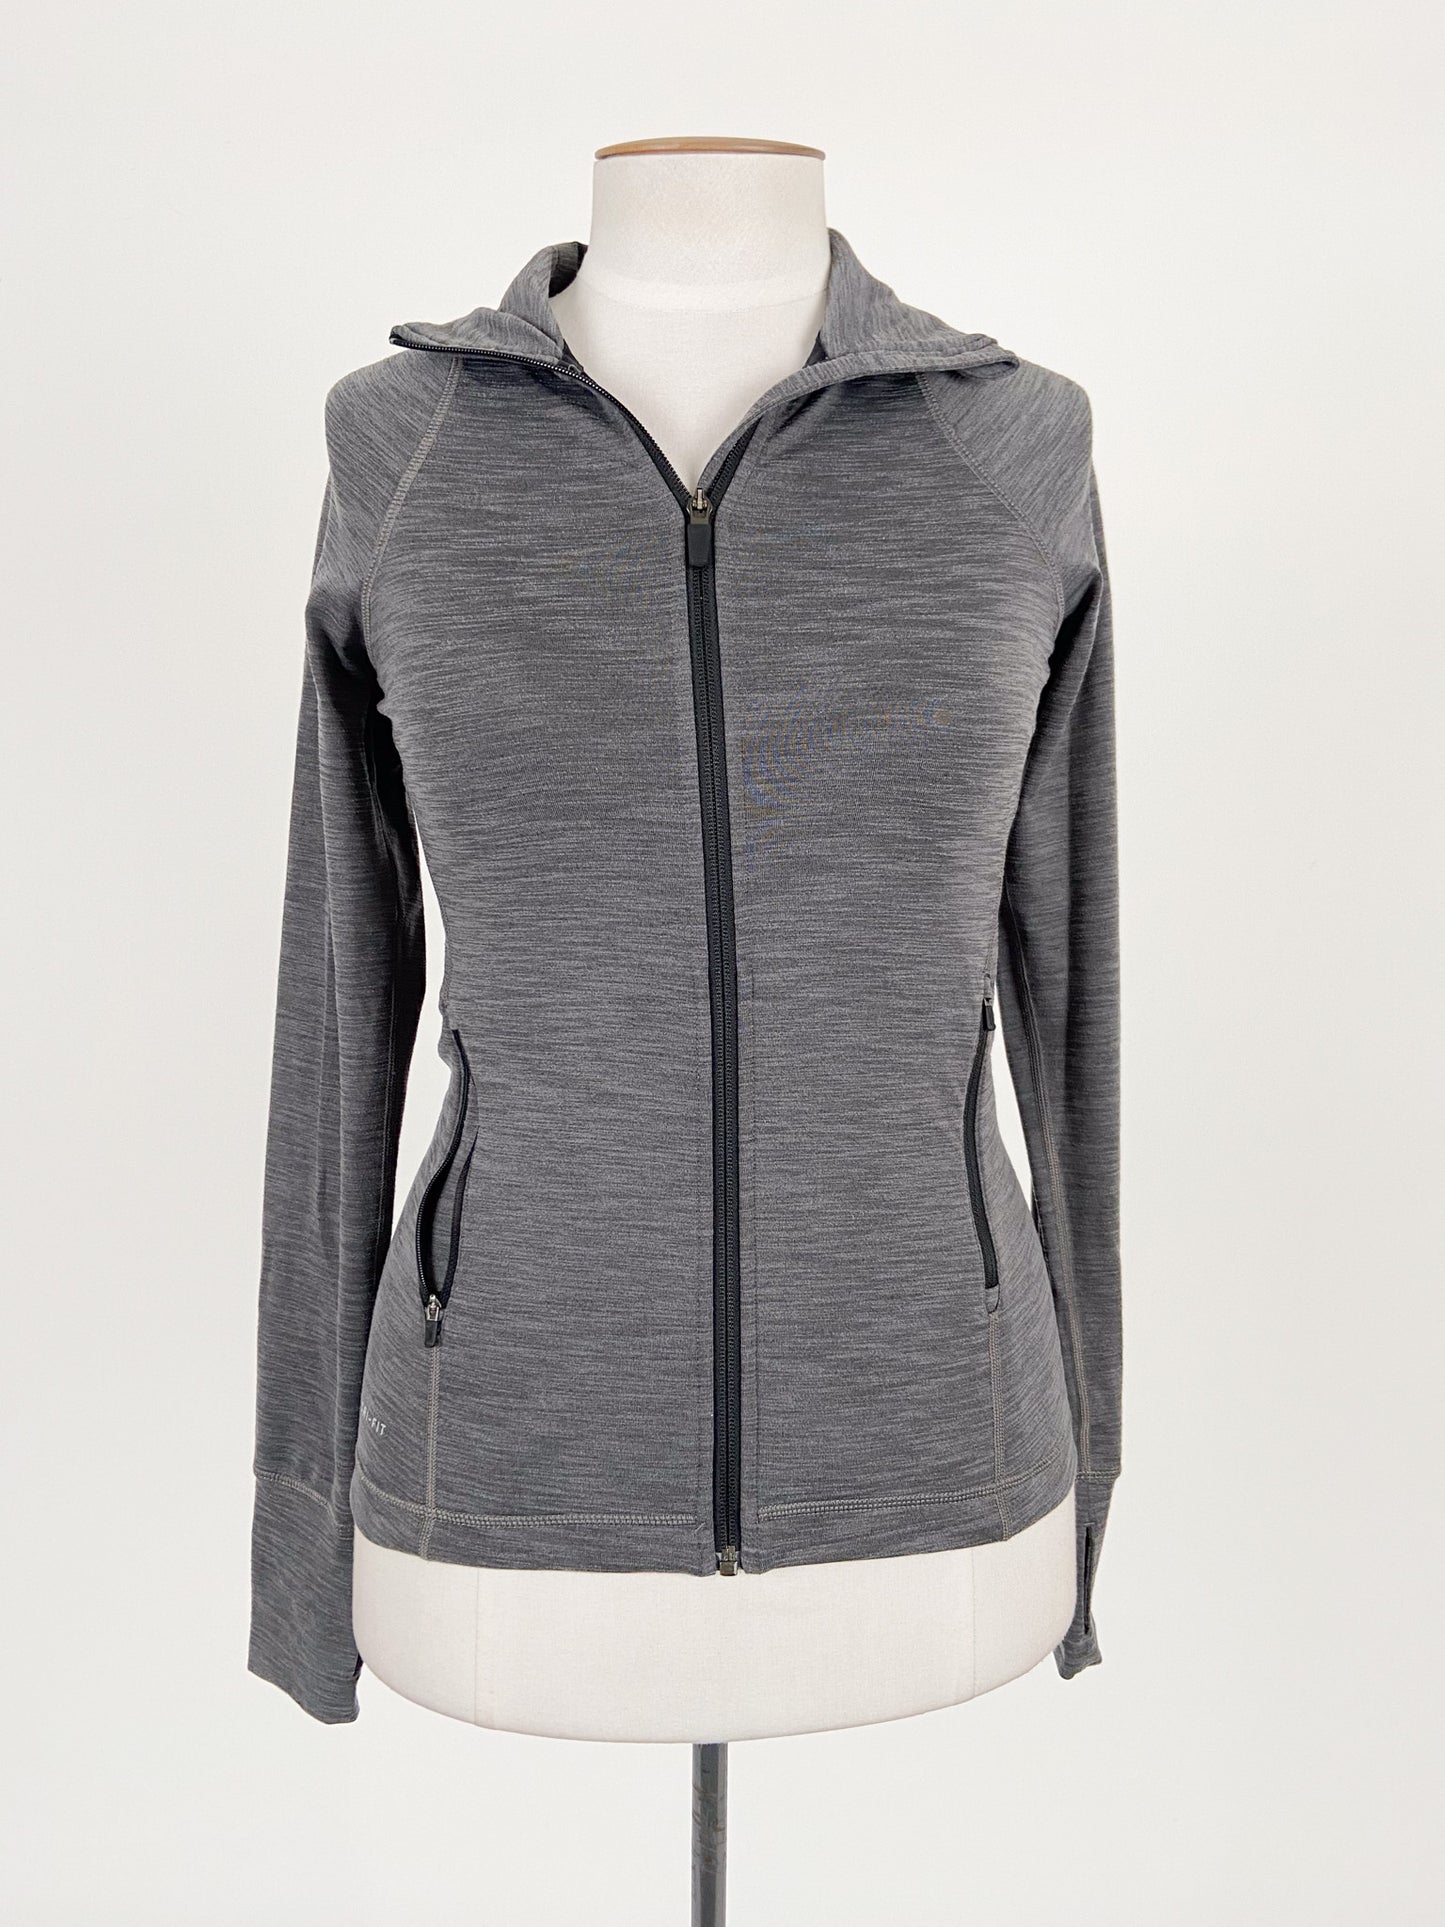 Nike | Grey Casual Jacket | Size M